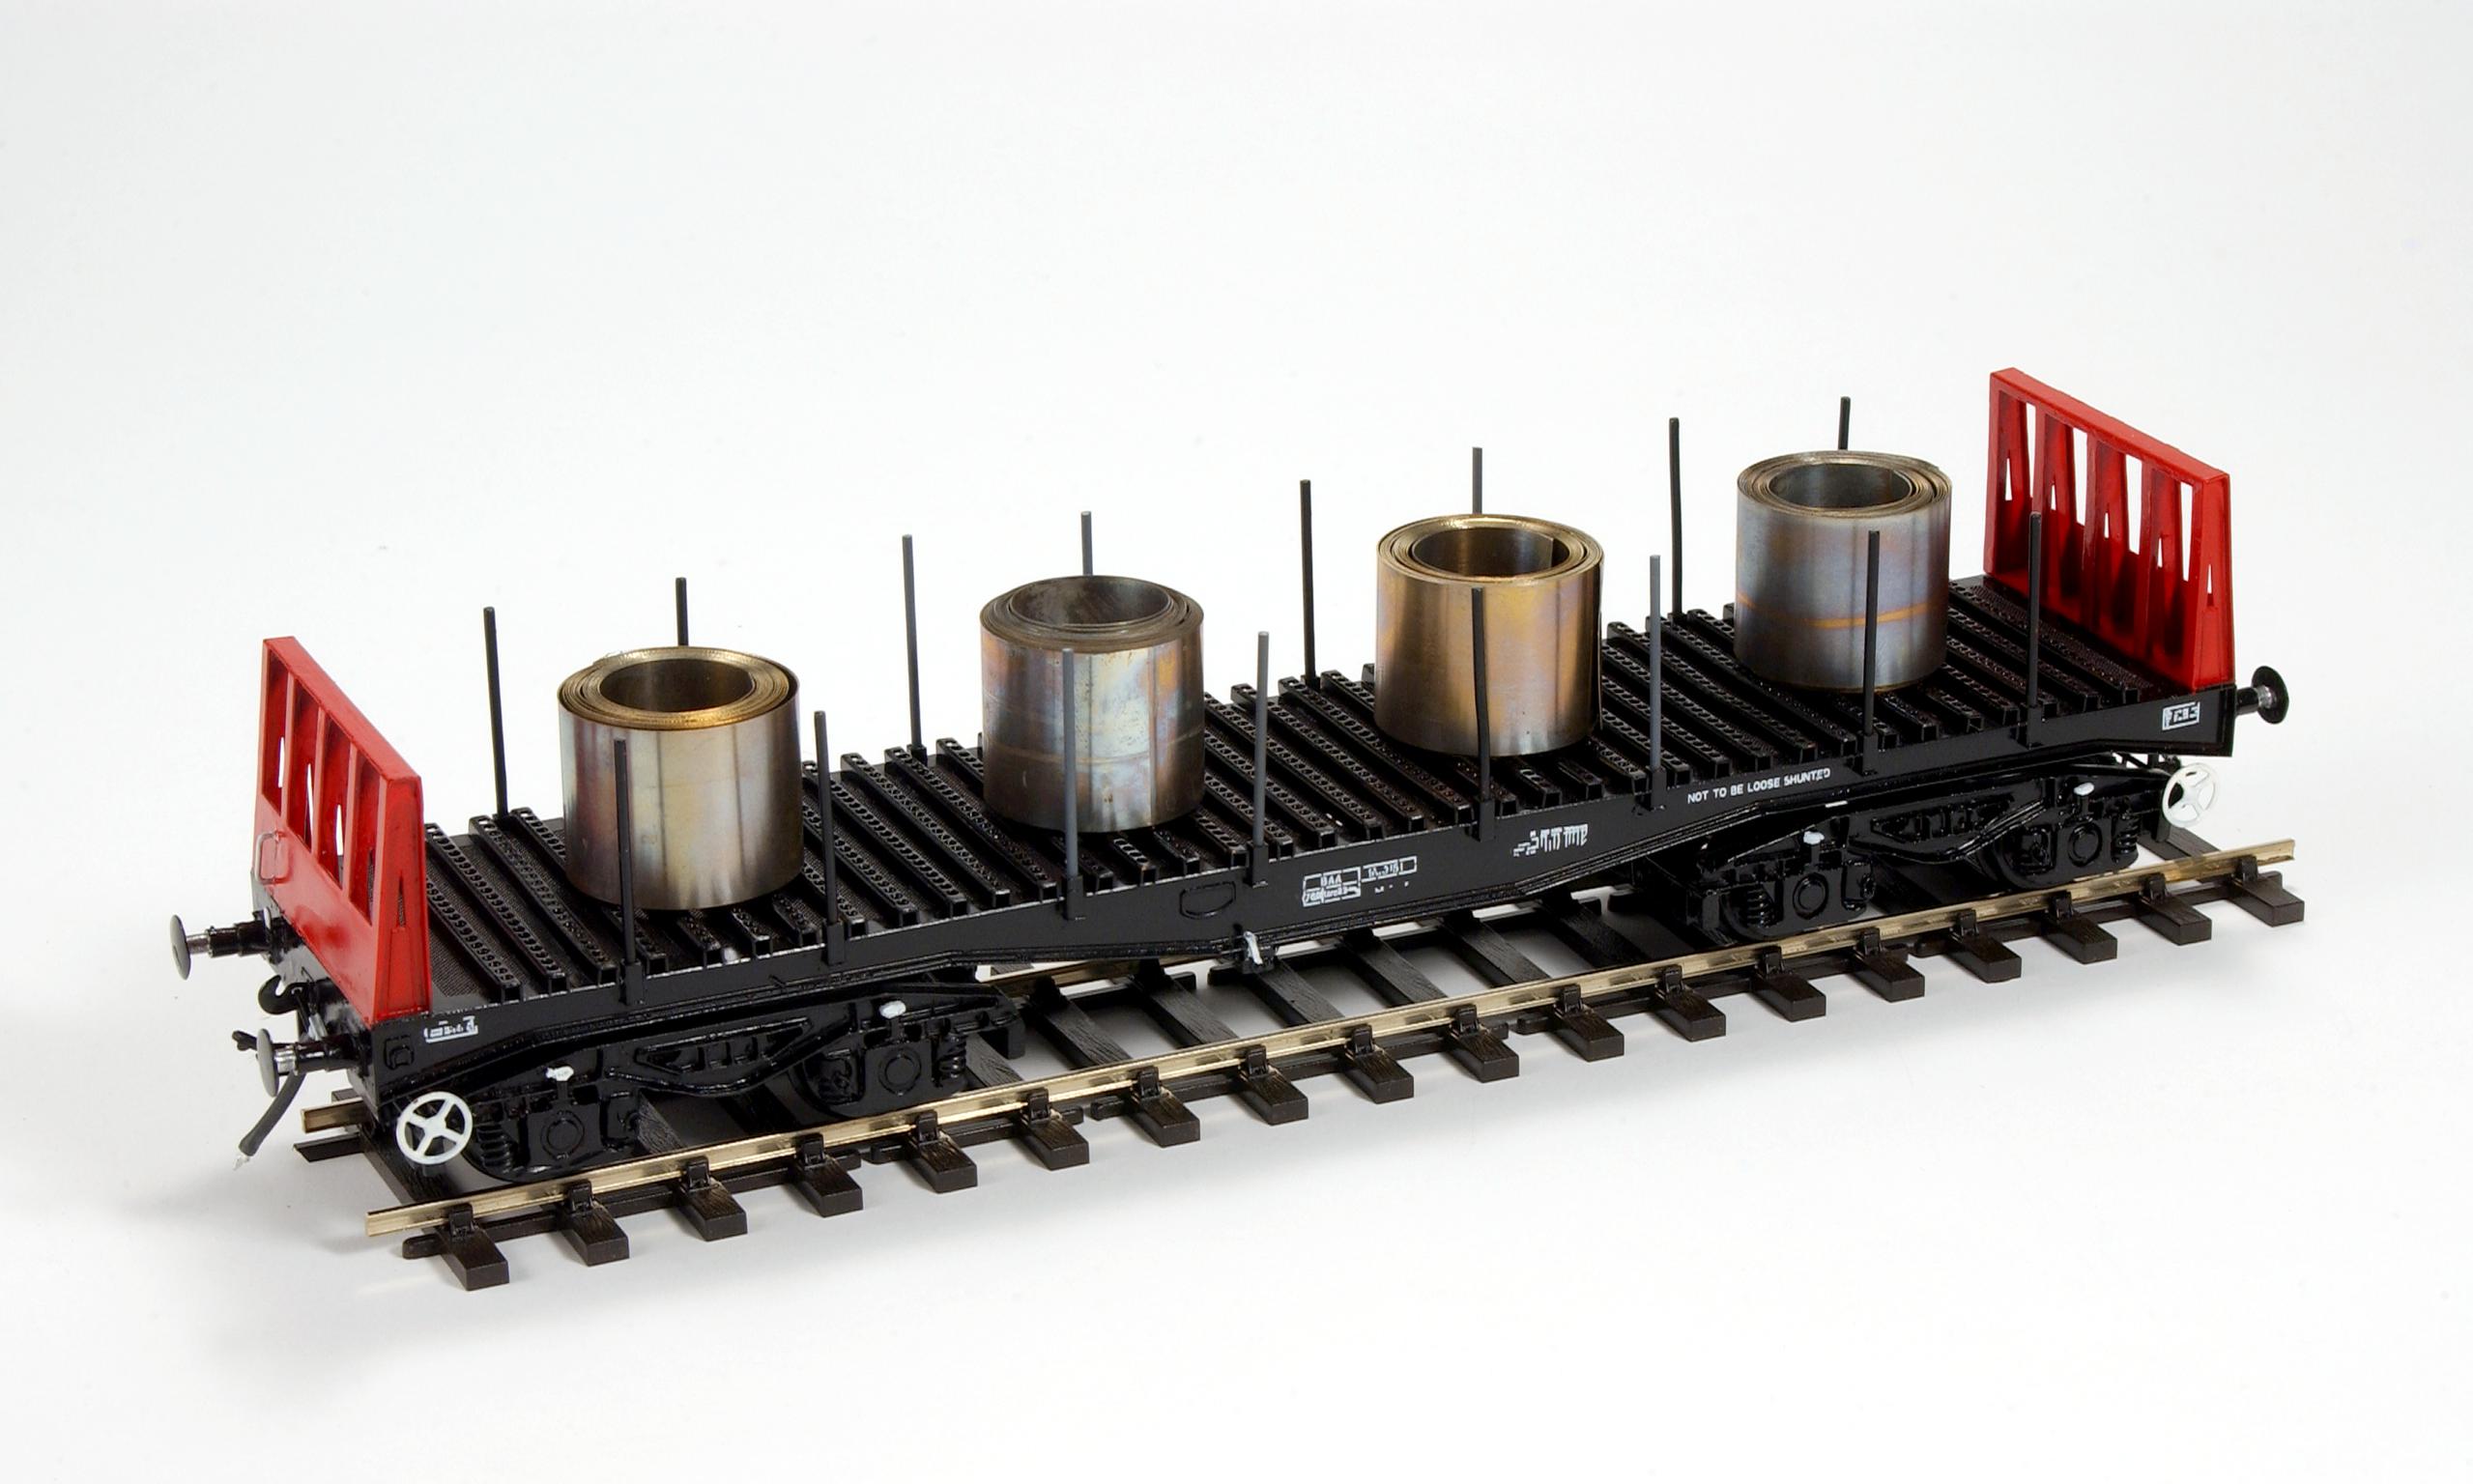 Steel coil carrier model